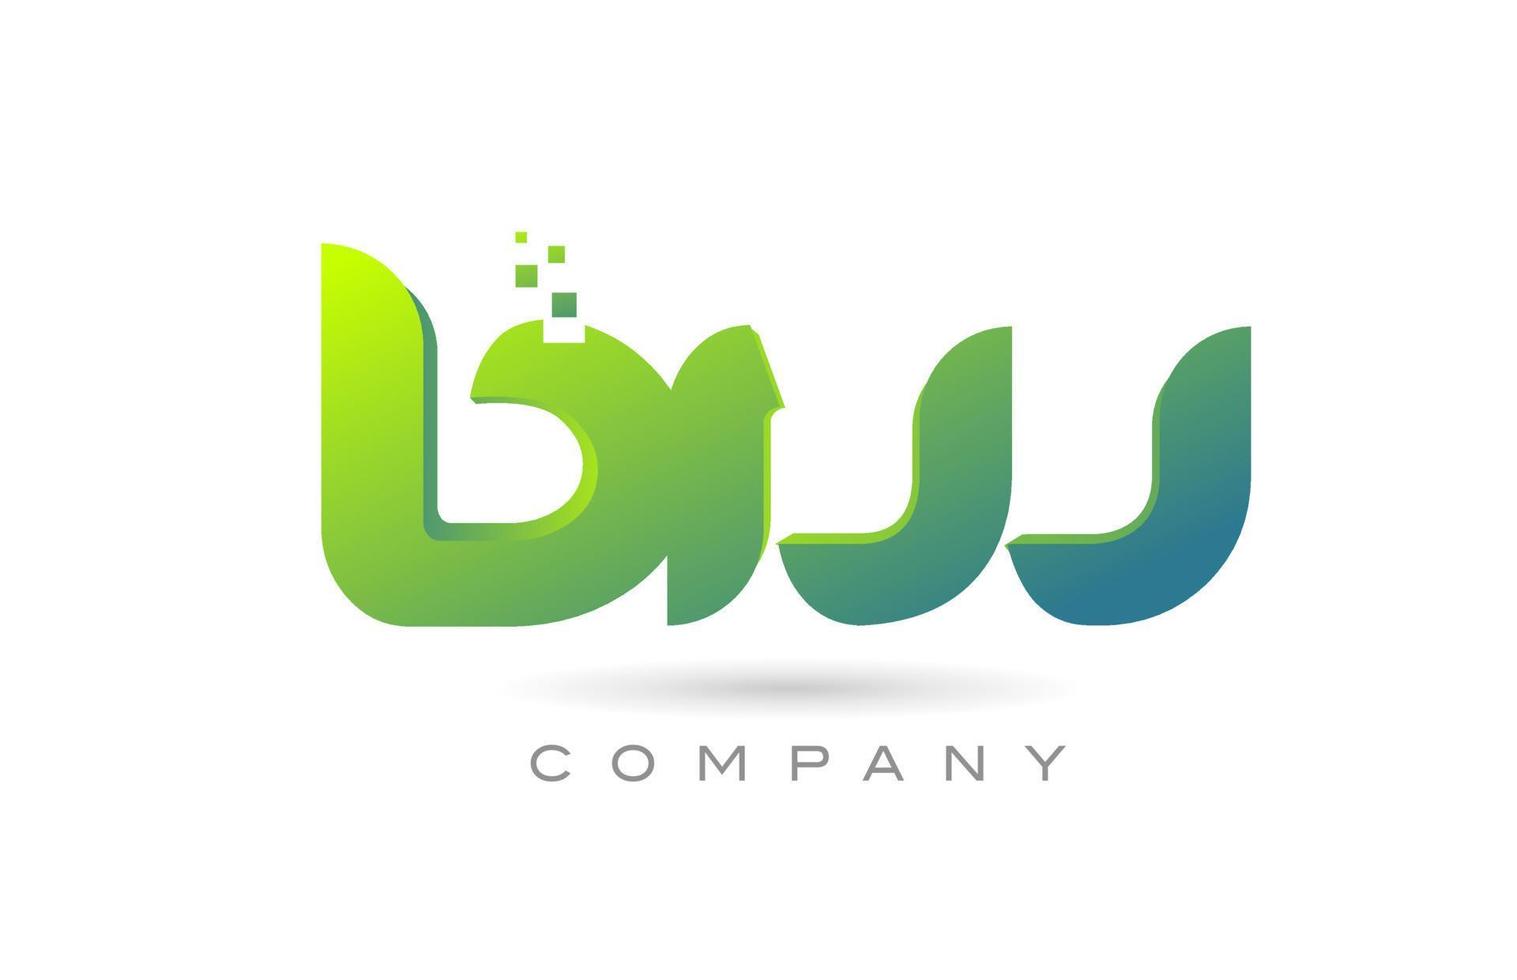 Iscritto bw alfabeto lettera logo icona combinazione design con puntini e verde colore. creativo modello per azienda e attività commerciale vettore